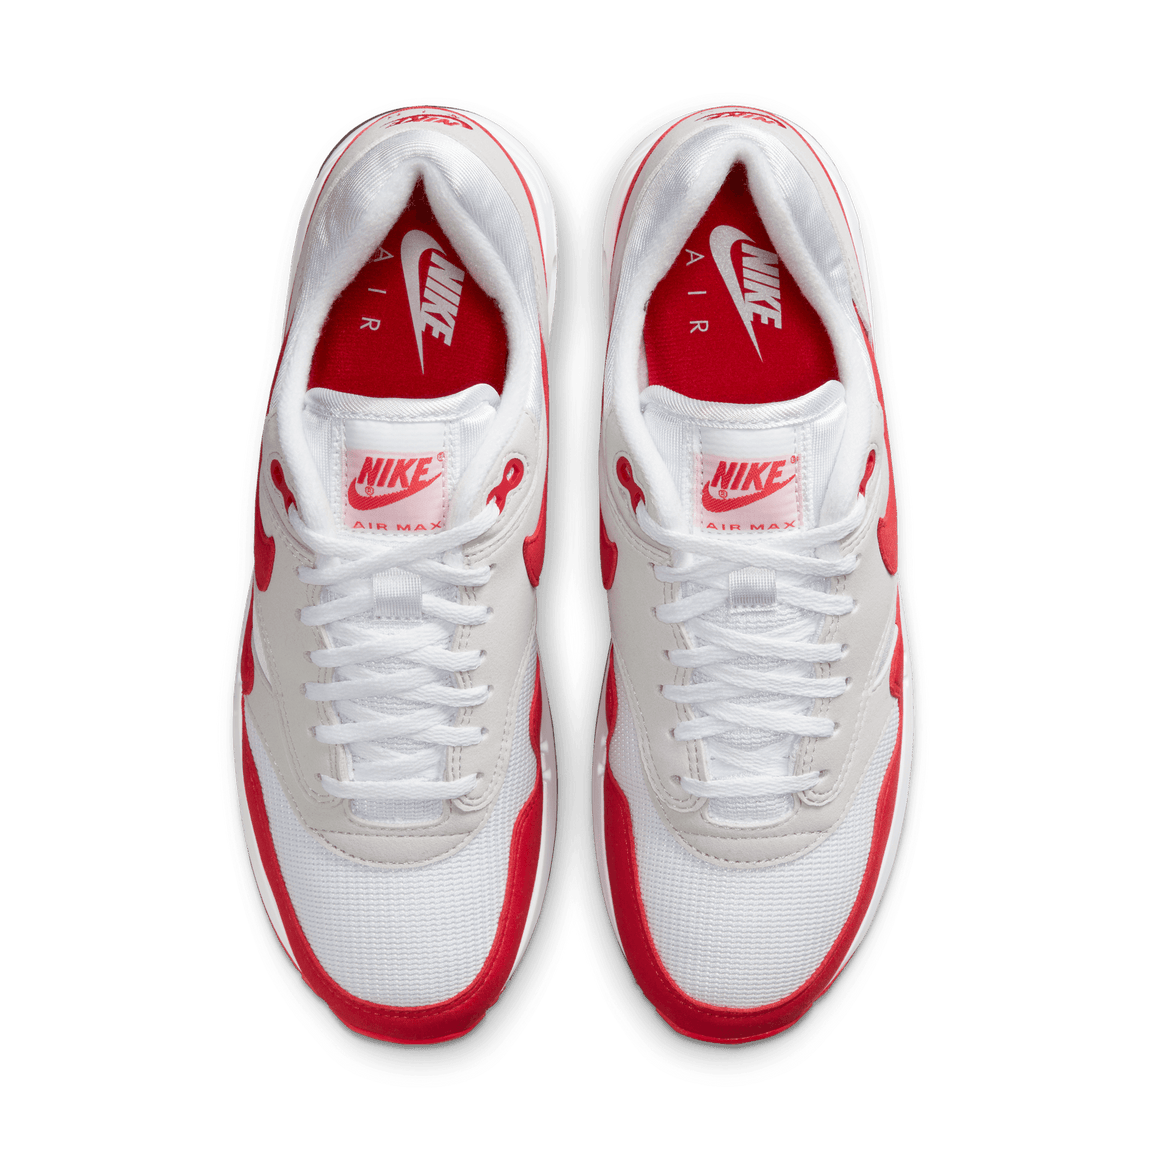 Nike Air Max 1 86 OG 'Big Bubble' (White/University Red/Light Neutral Grey) - Nike Air Max 1 86 OG 'Big Bubble' (White/University Red/Light Neutral Grey) - 